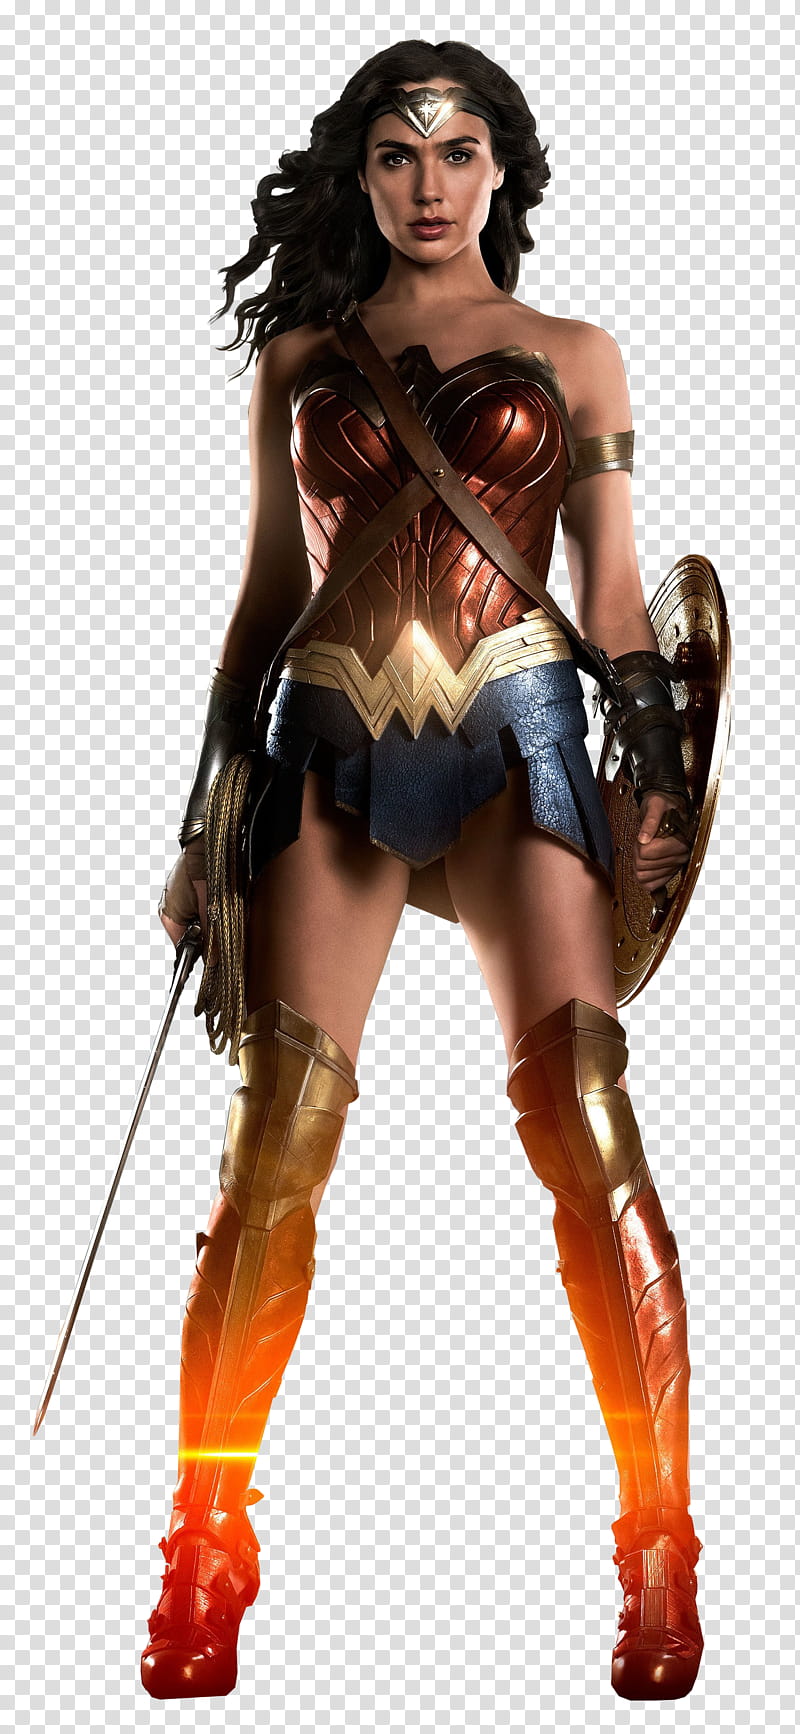 Justice League Wonder Woman transparent background PNG clipart